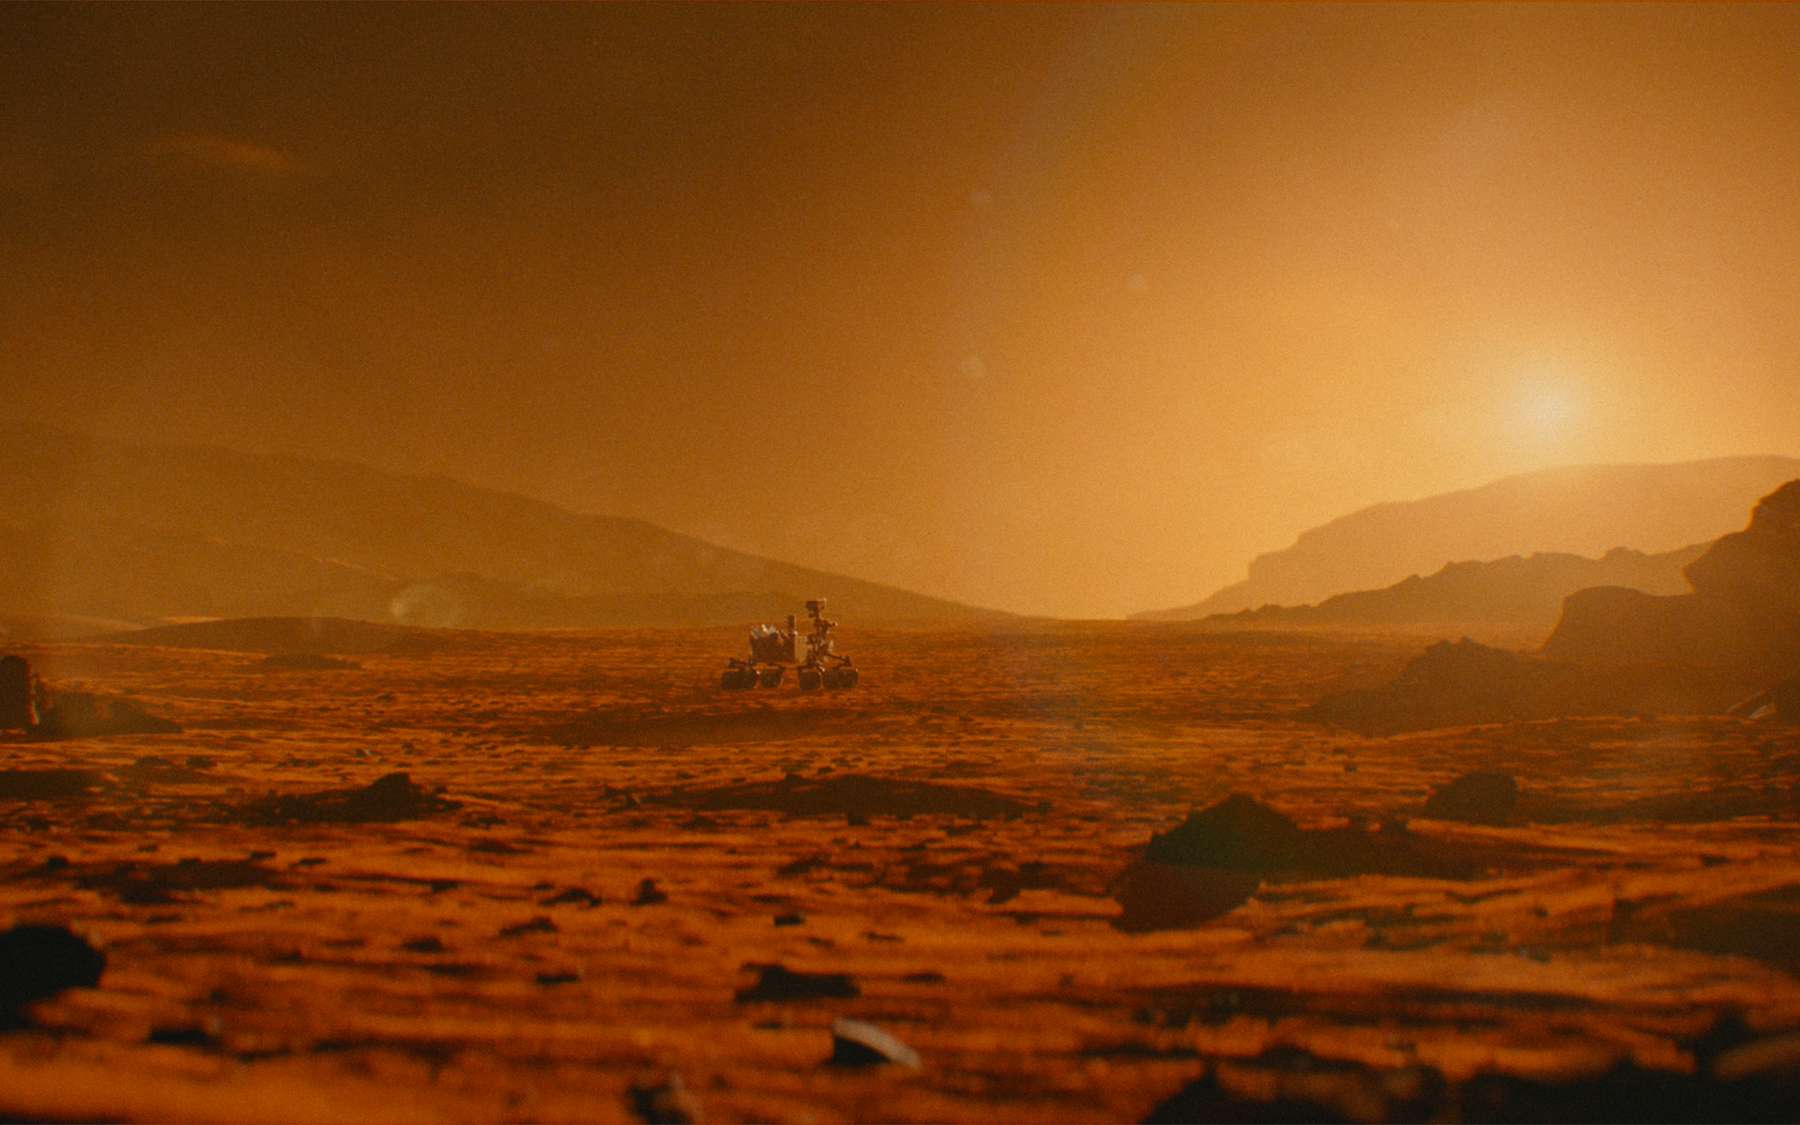 Le rover Curiosity de la Nasa parcoure le cratère Gale et ses environs depuis 10 ans. © Husqvarna, Nasa